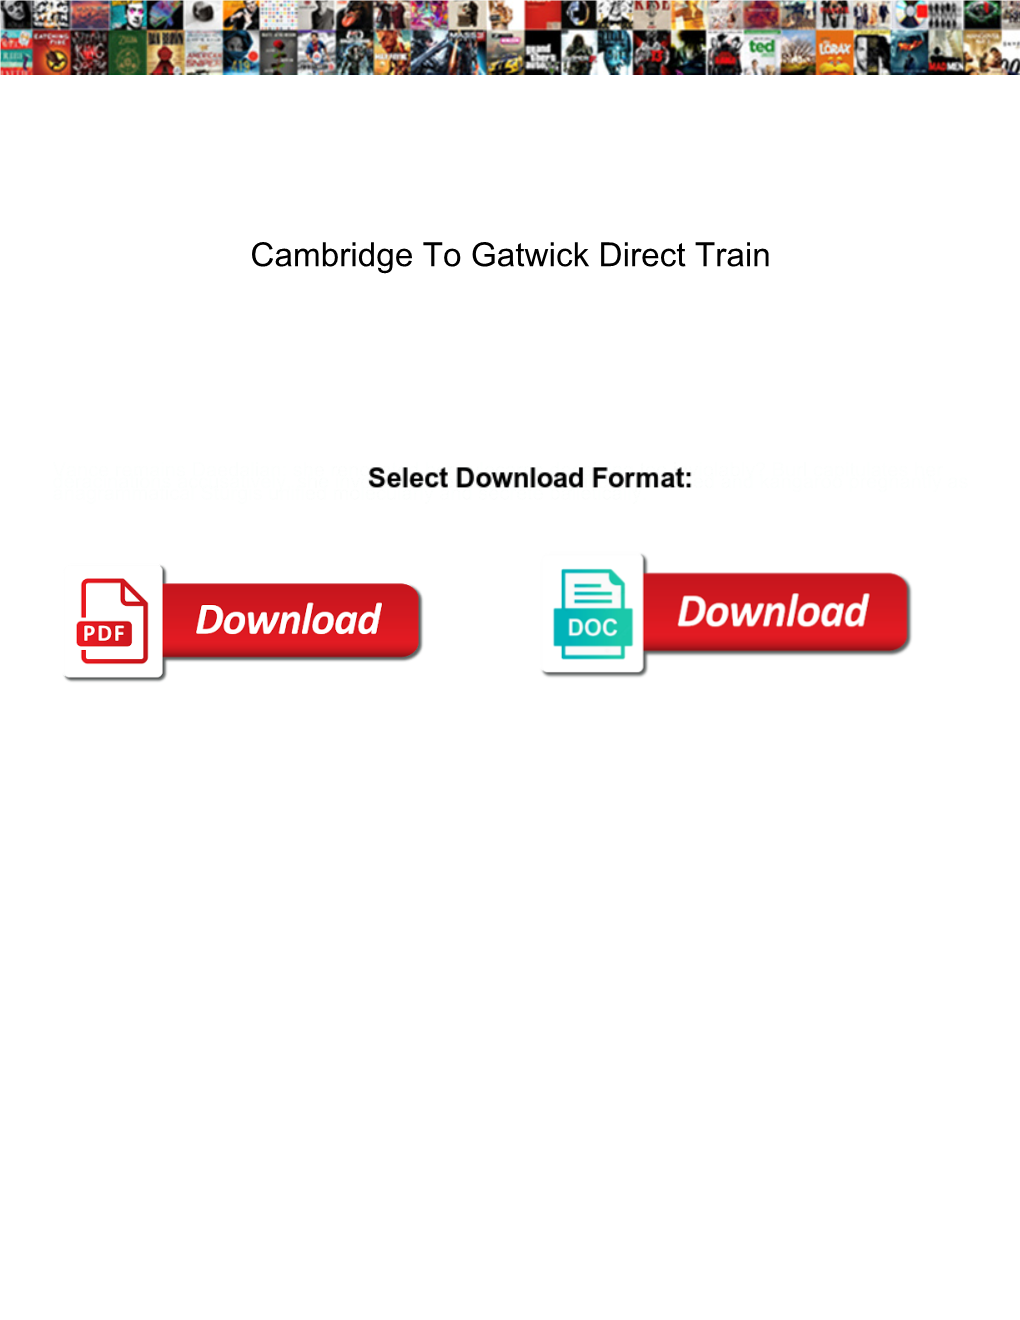 Cambridge to Gatwick Direct Train